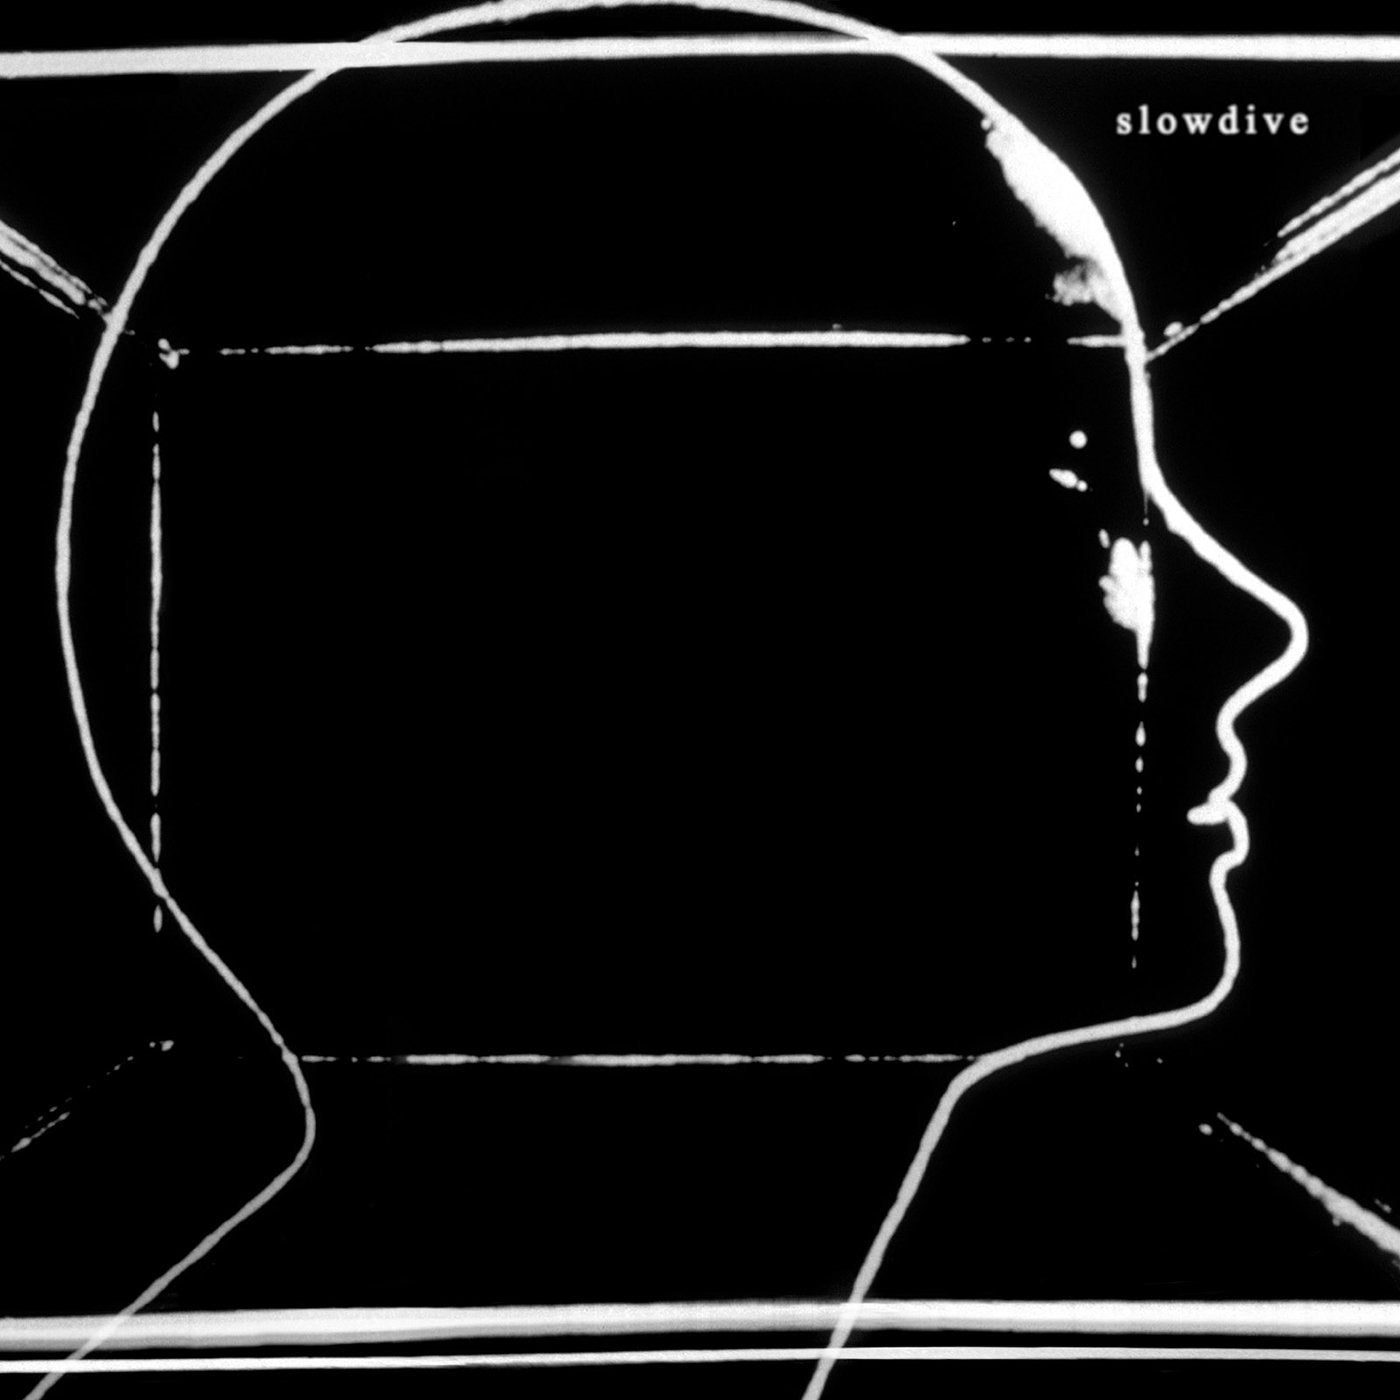 LP - Slowdive - S/T